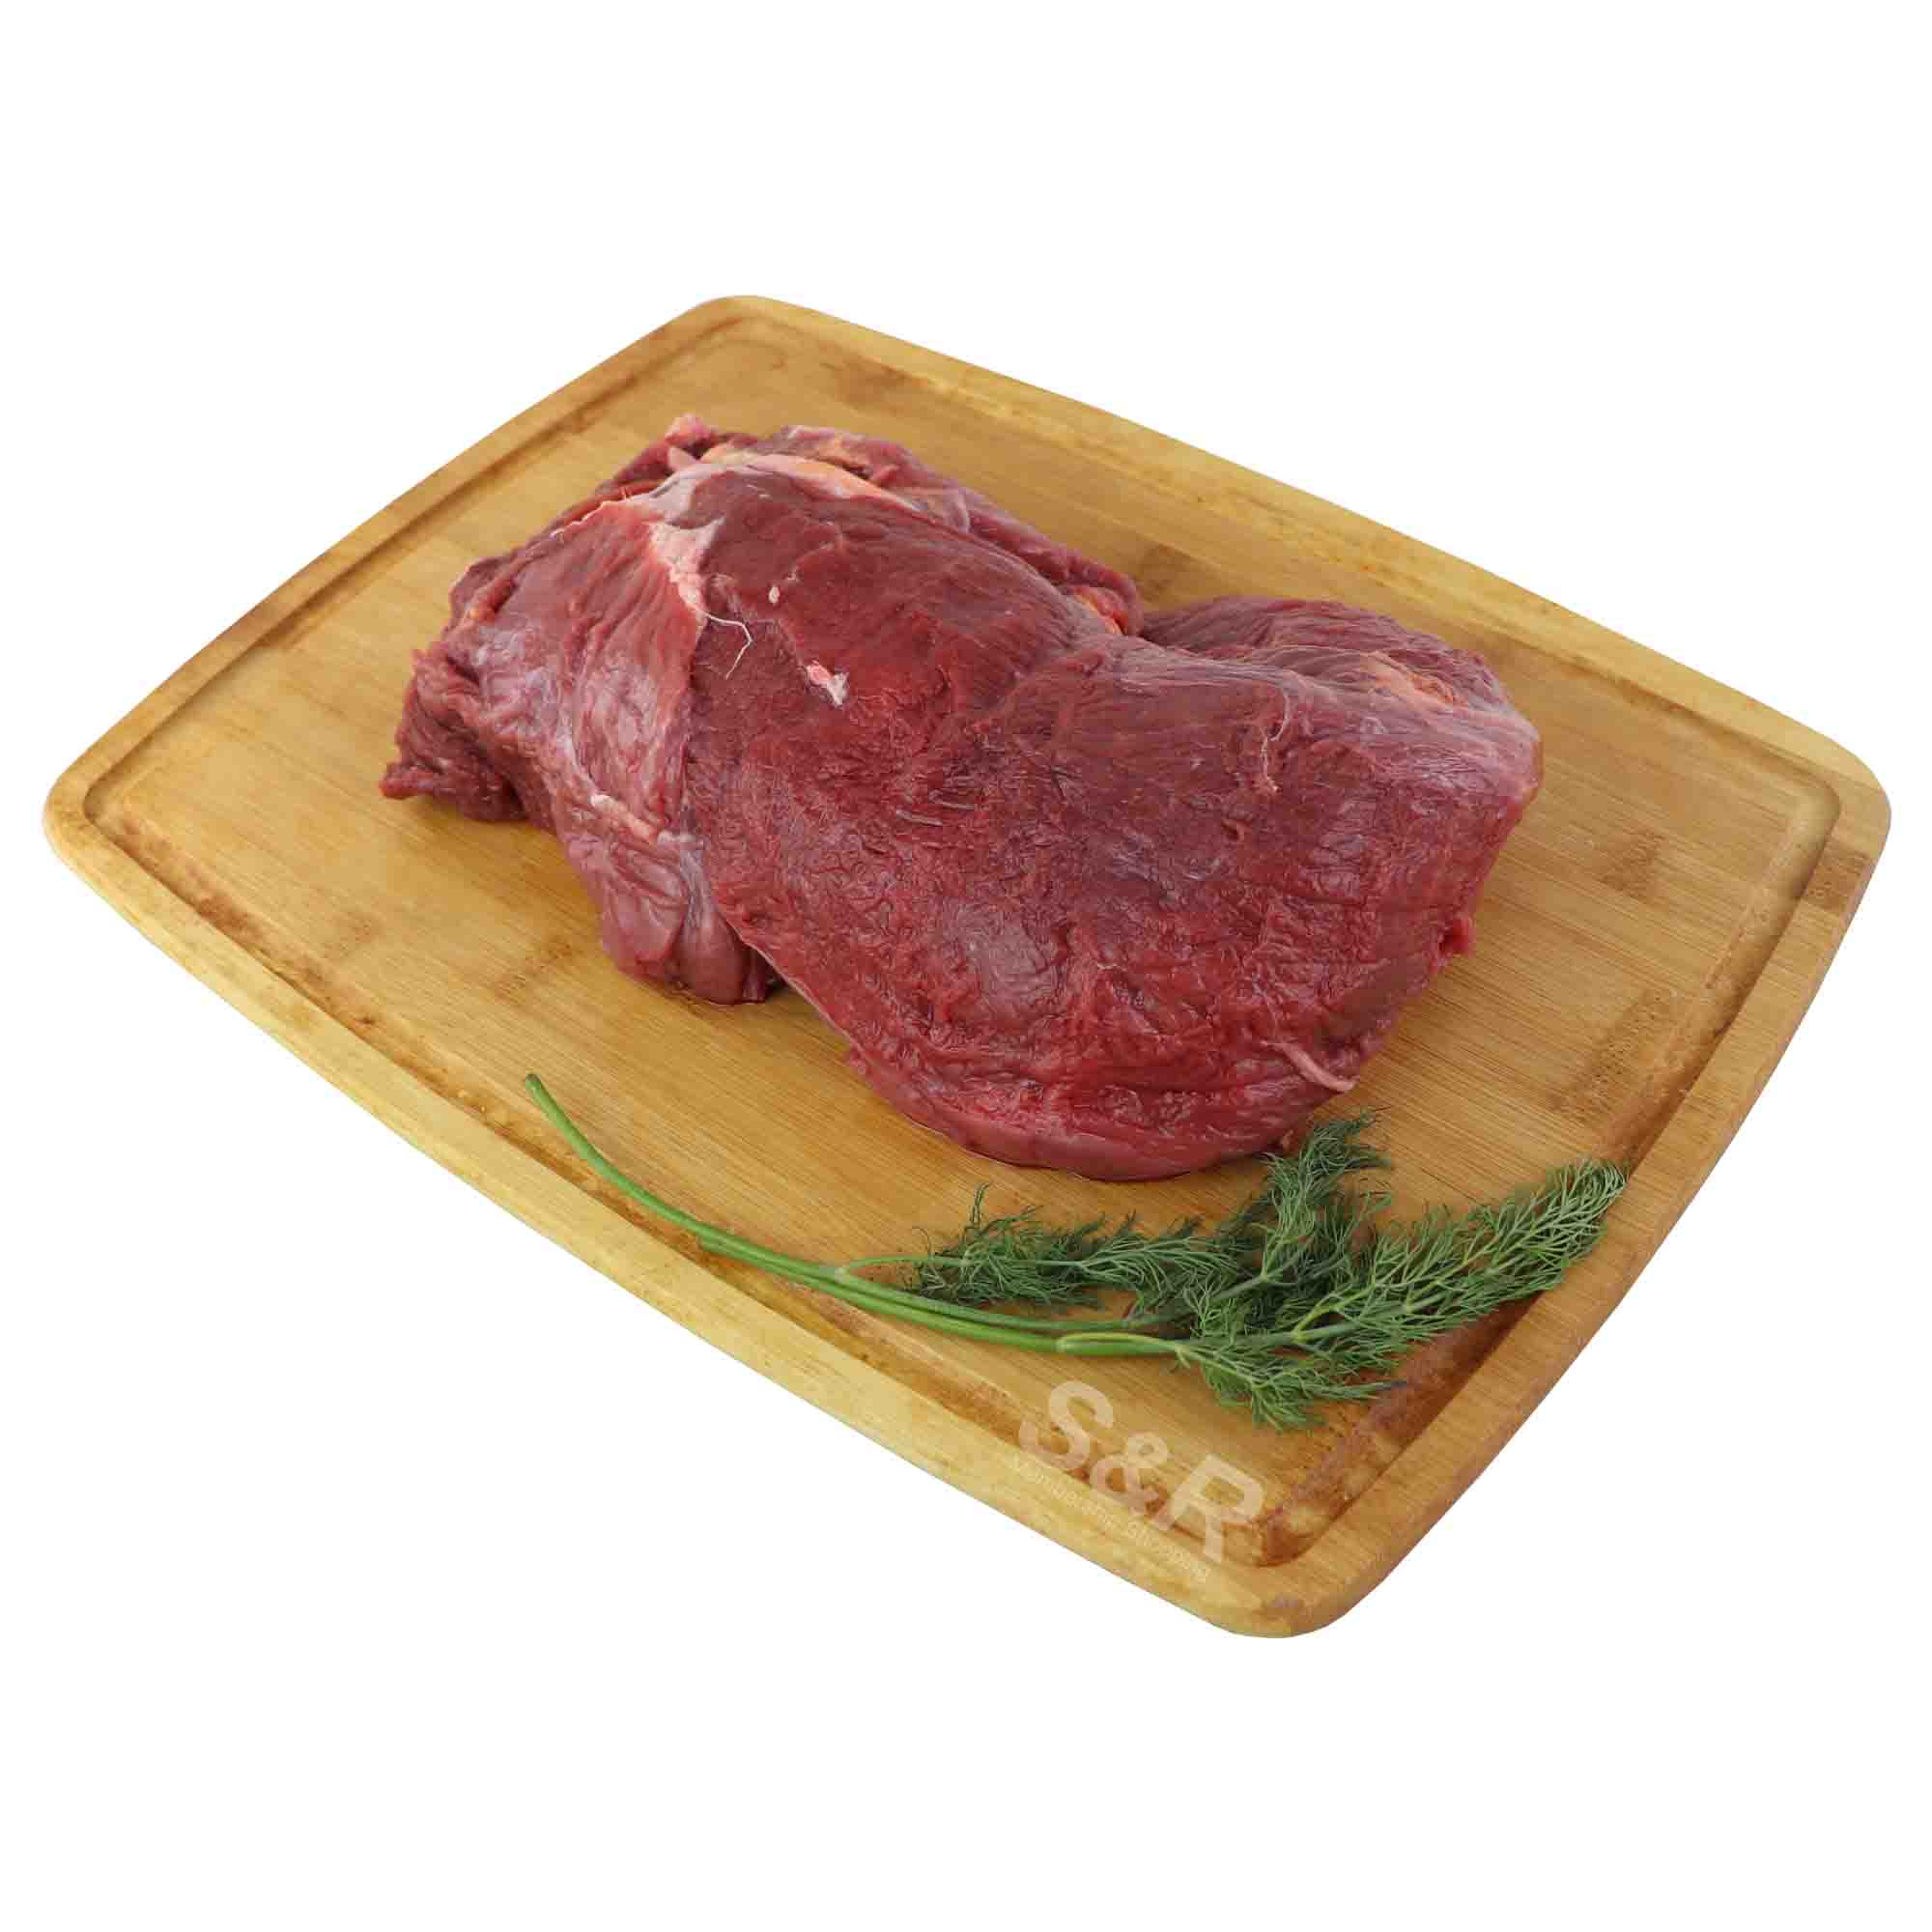 Auszeal Beef Tenderloin Steak approx. 2kg